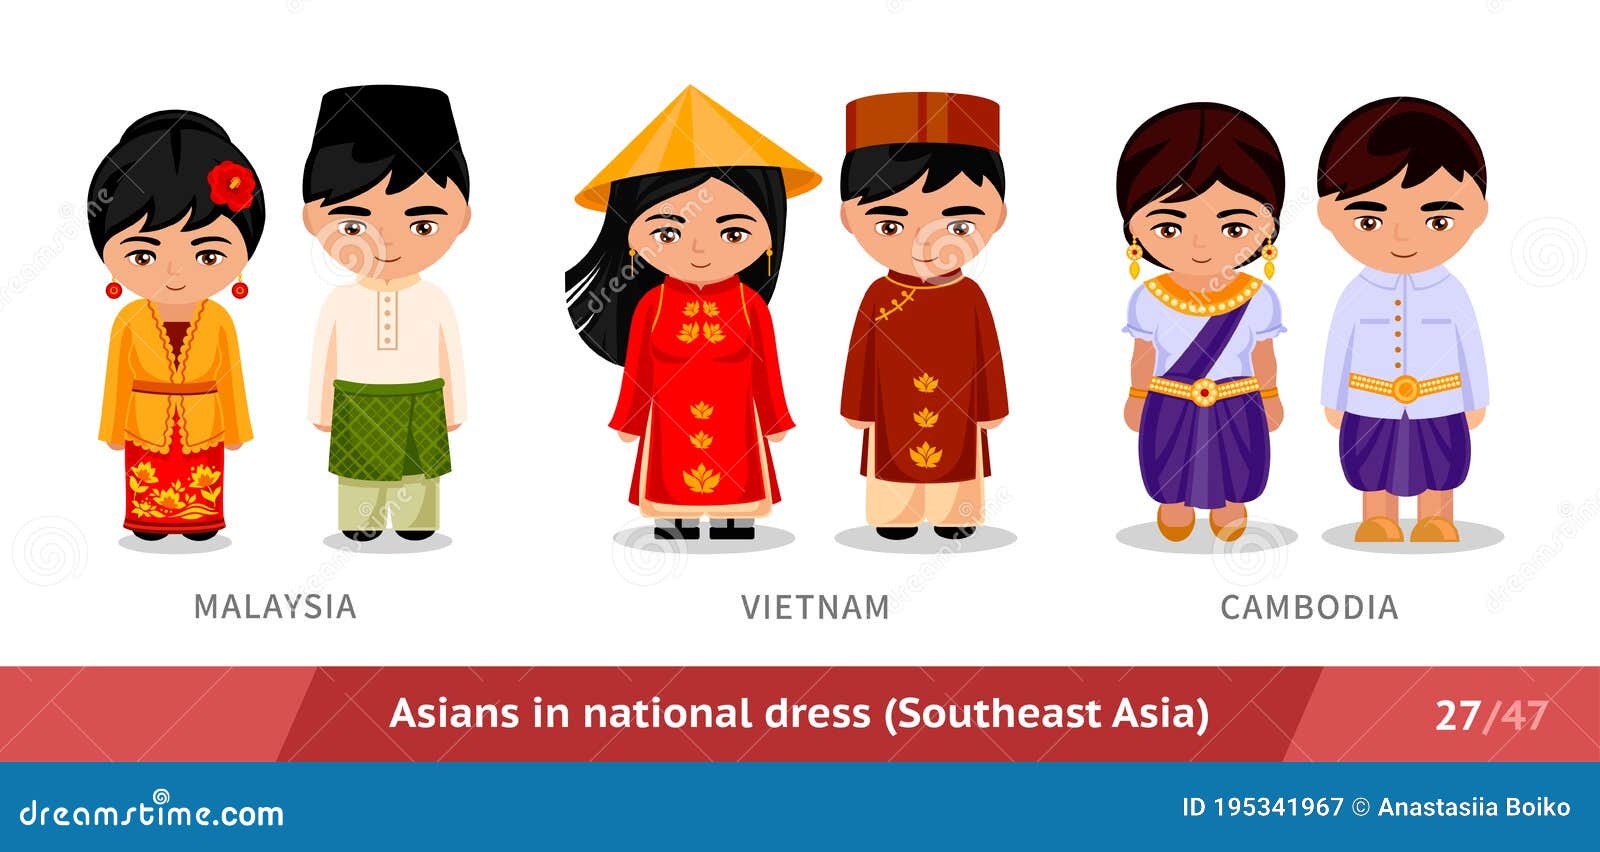 dez homens e mulheres da Ásia Central em trajes tradicionais